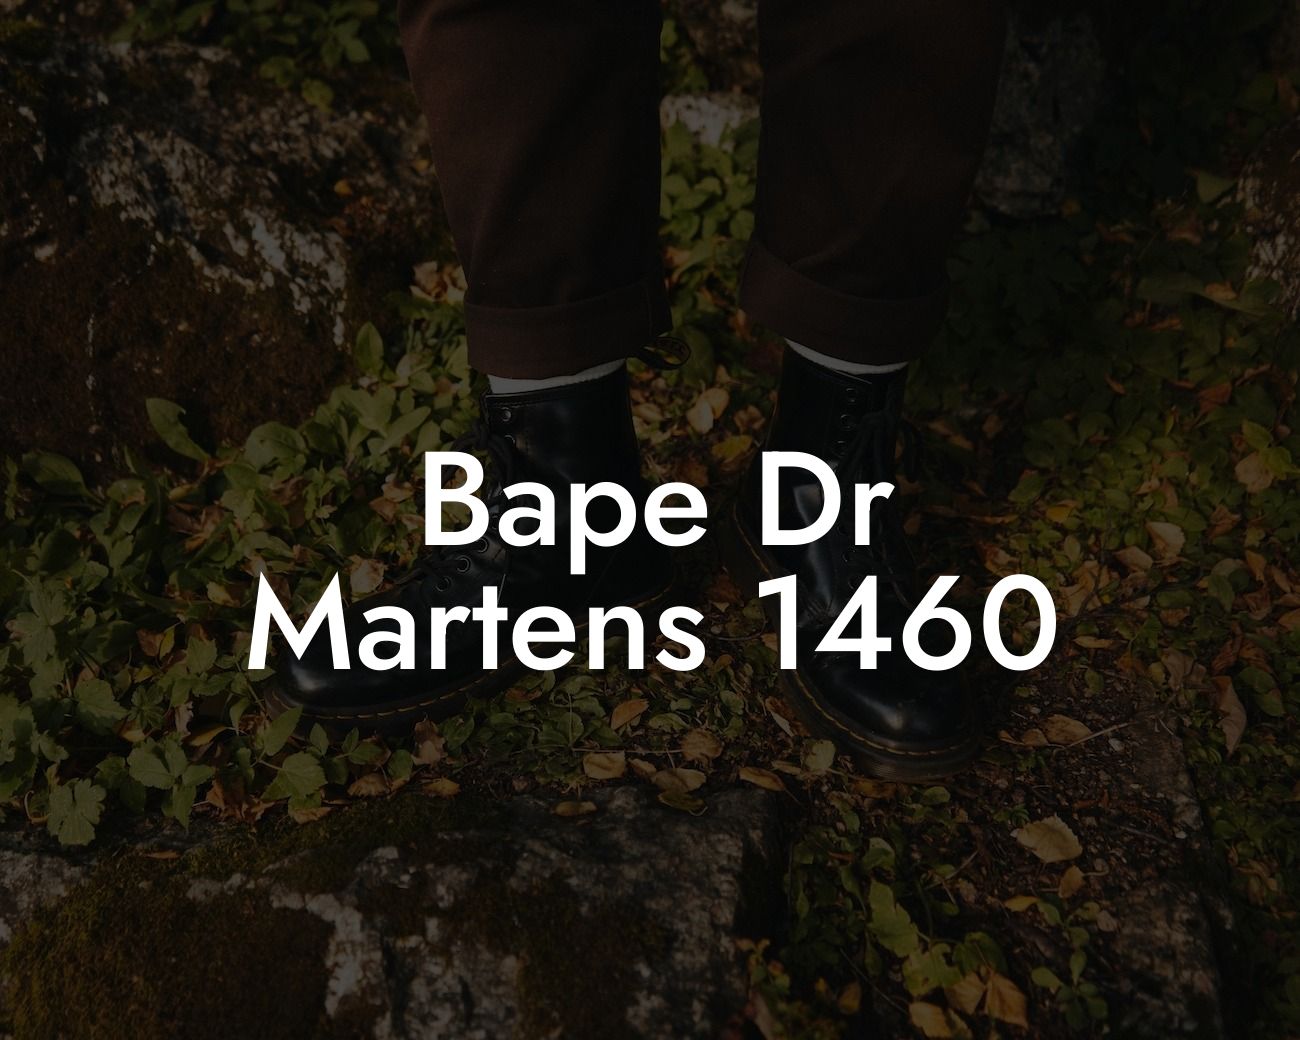 Bape Dr Martens 1460